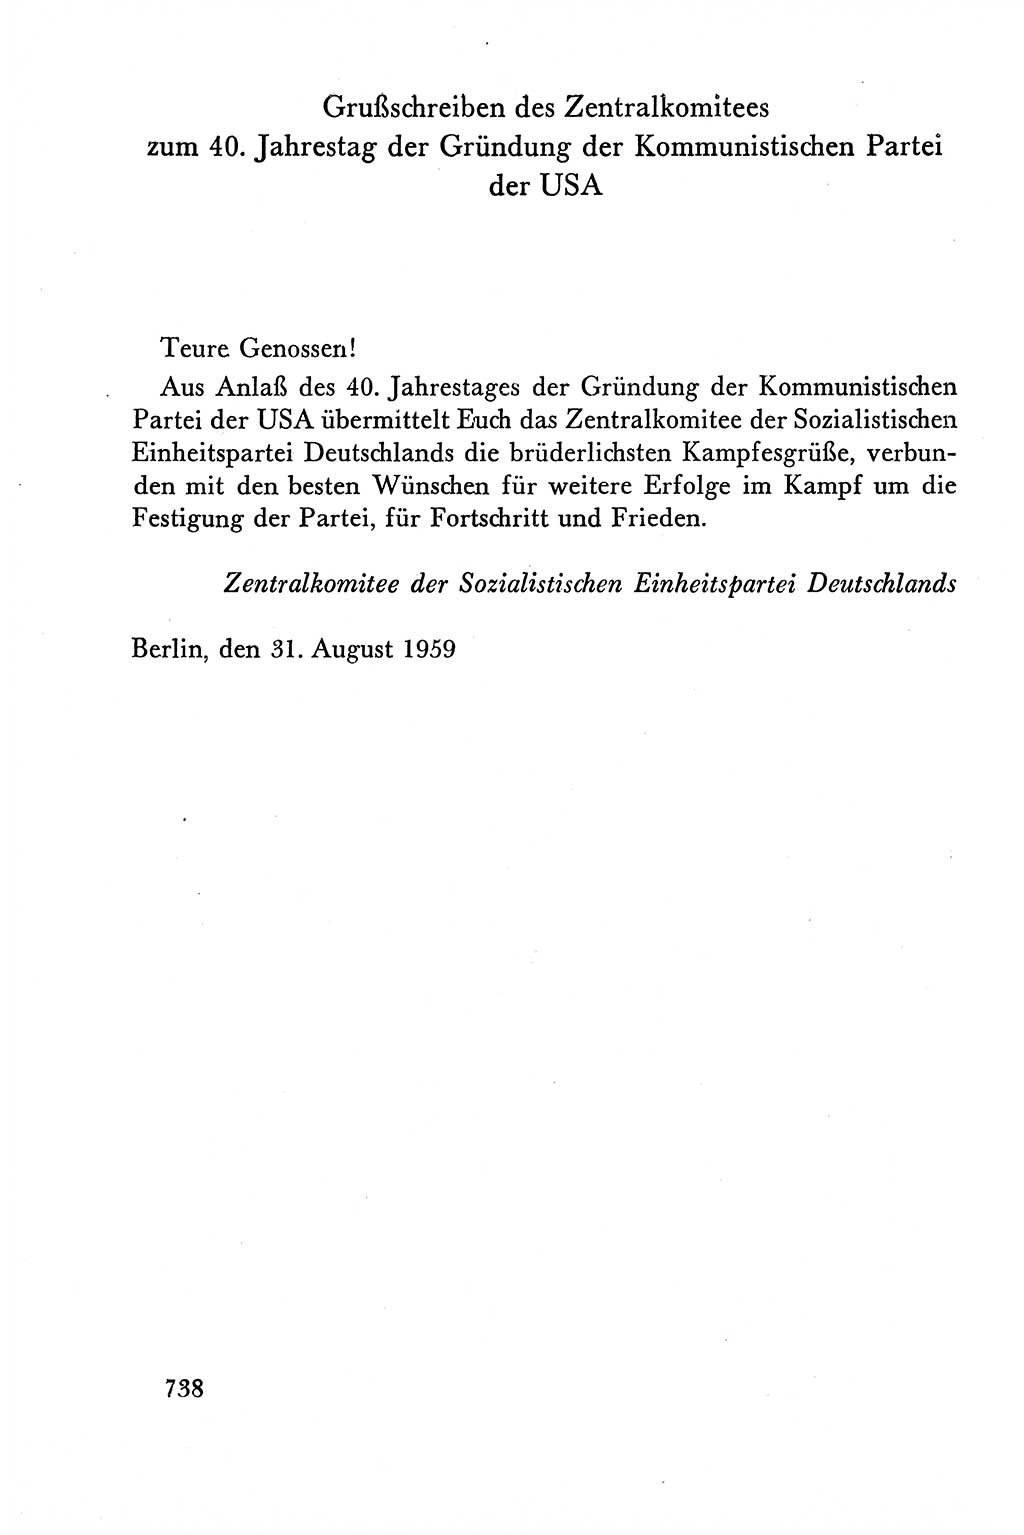 Dokumente der Sozialistischen Einheitspartei Deutschlands (SED) [Deutsche Demokratische Republik (DDR)] 1958-1959, Seite 738 (Dok. SED DDR 1958-1959, S. 738)